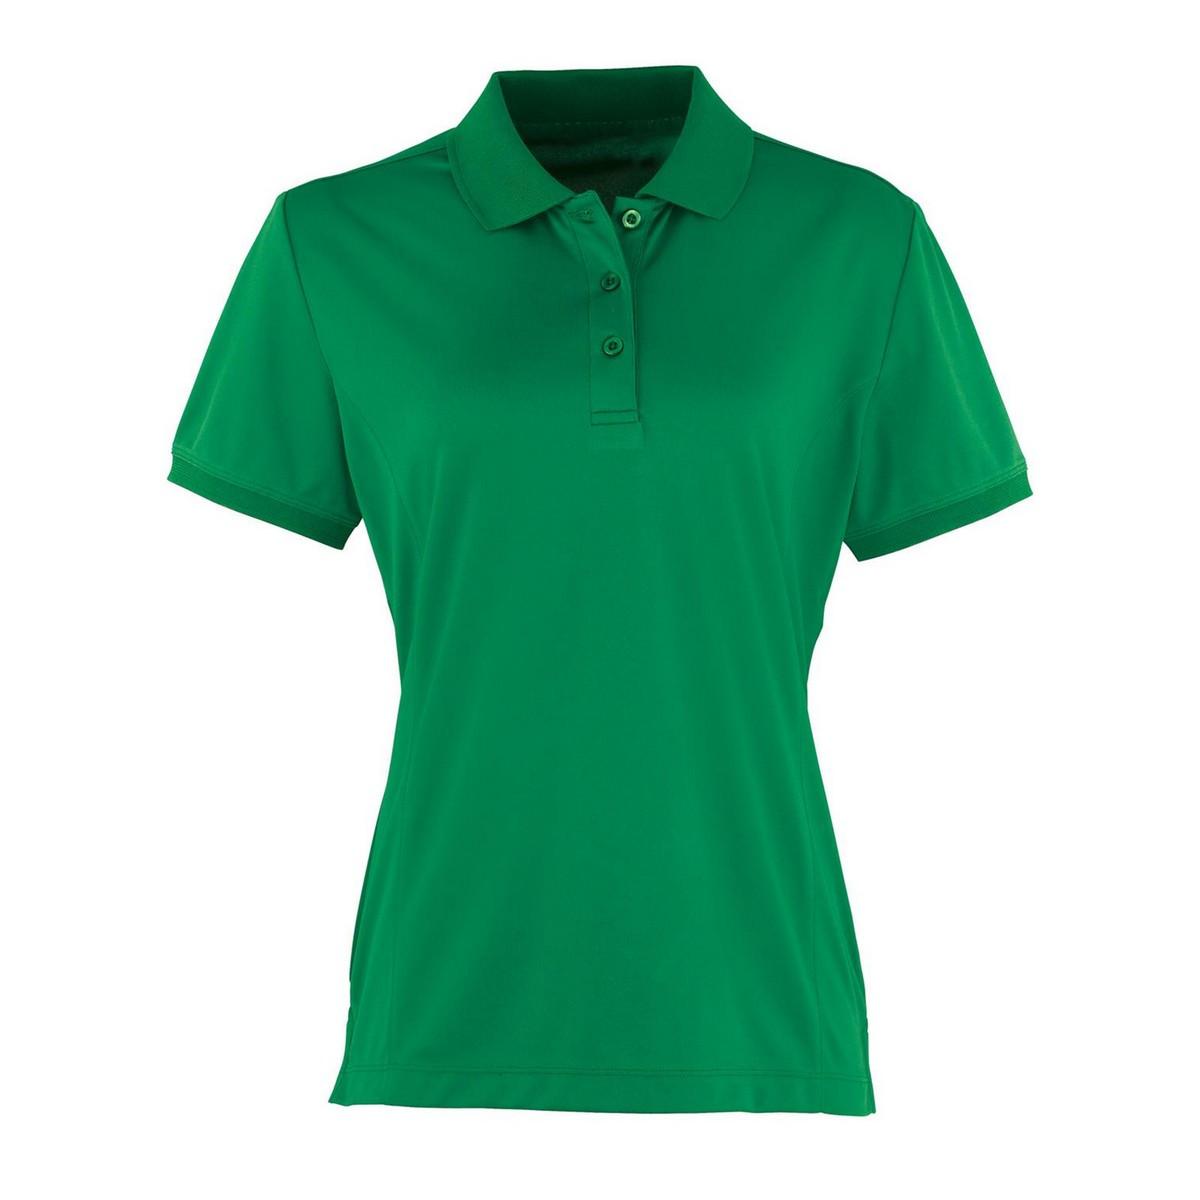 Coolchecker Poloshirt Damen Grün 40 von PREMIER